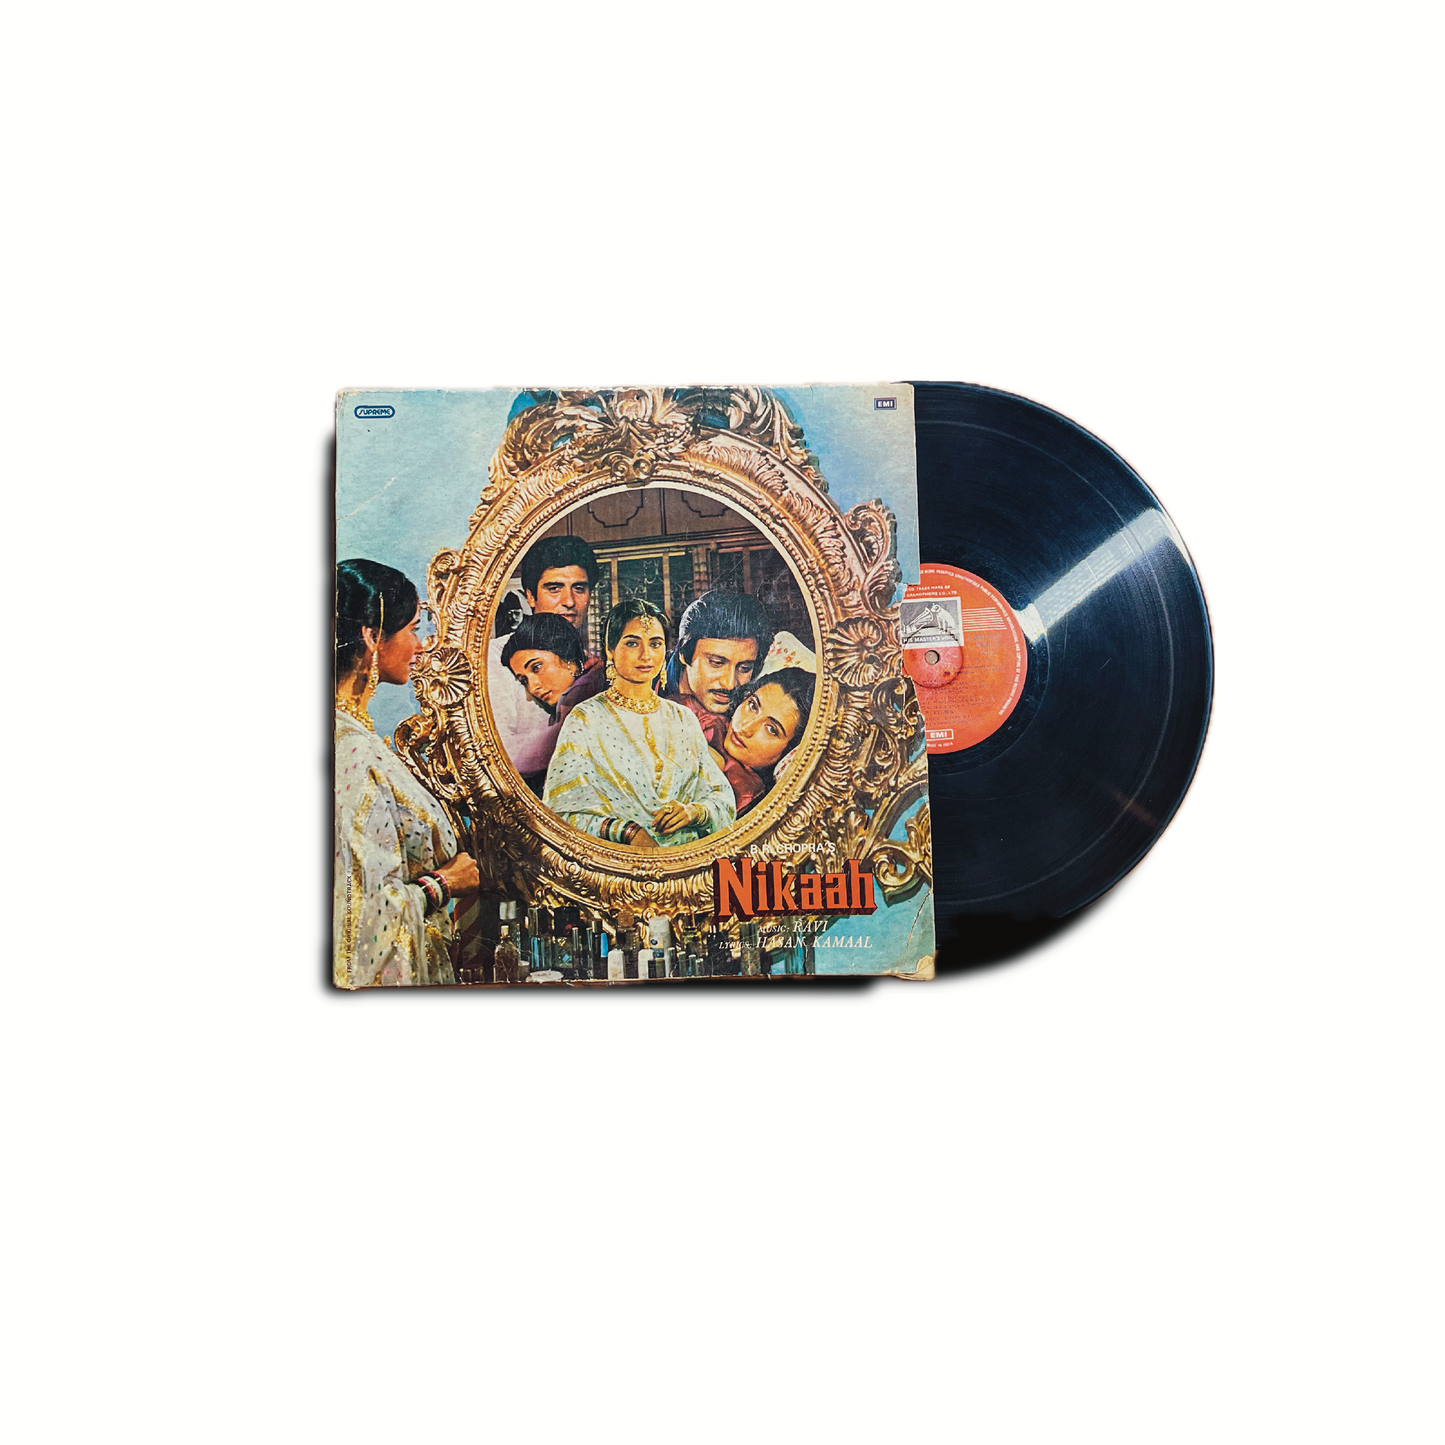 'NIKAAH' - VINTAGE VINYL LP RECORD 1982